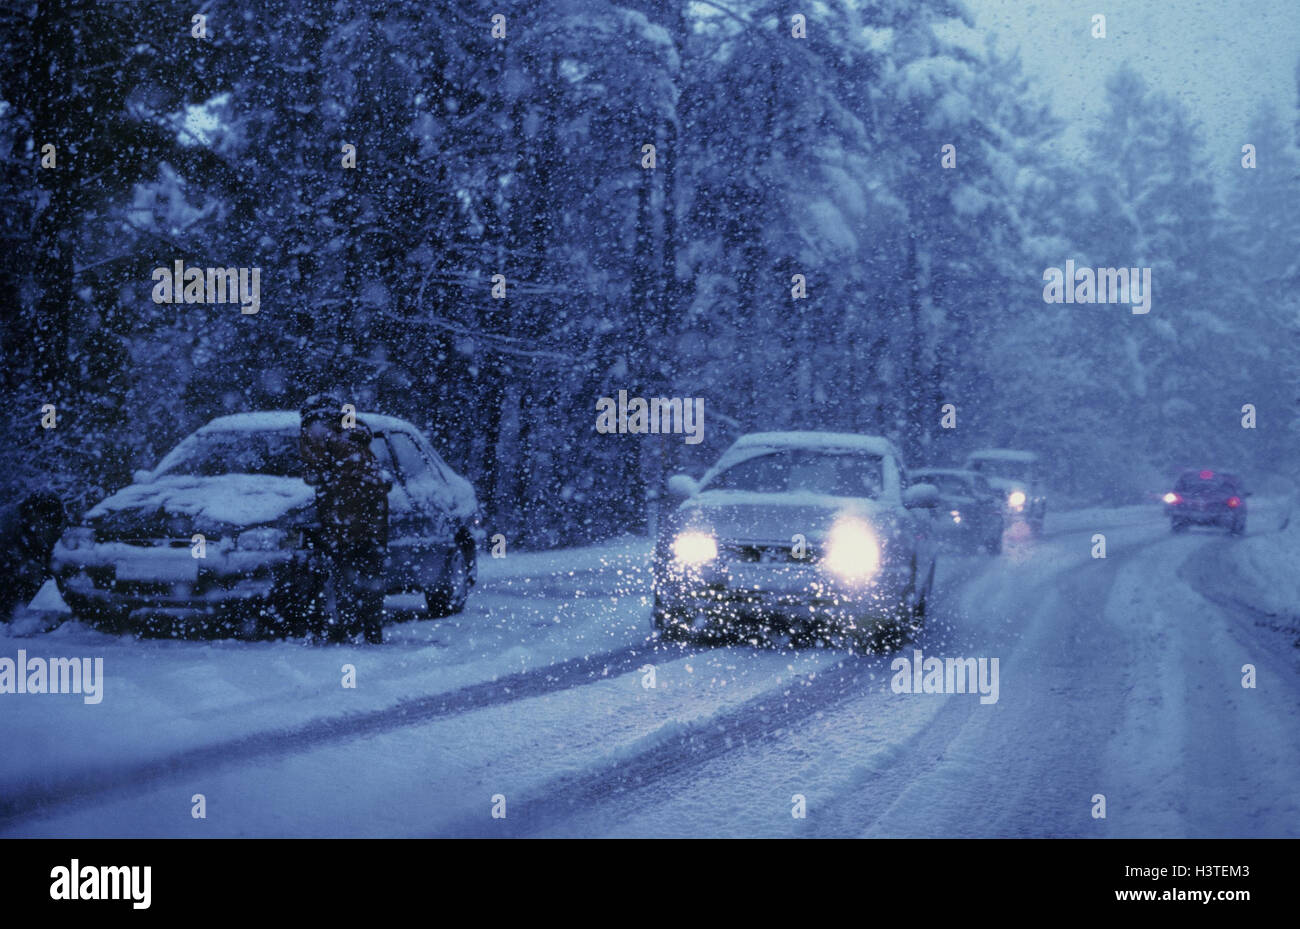 Landstraße, Verkehr, Pflaster, Schnee, am Straßenrand, Auto, Fahrer, Bearbeitung, Anti-Rutsch-Ketten, Winter Schnee, Schneefall, Dämmerung, schneebedeckte Straße, Straße, Schnee Stockfoto